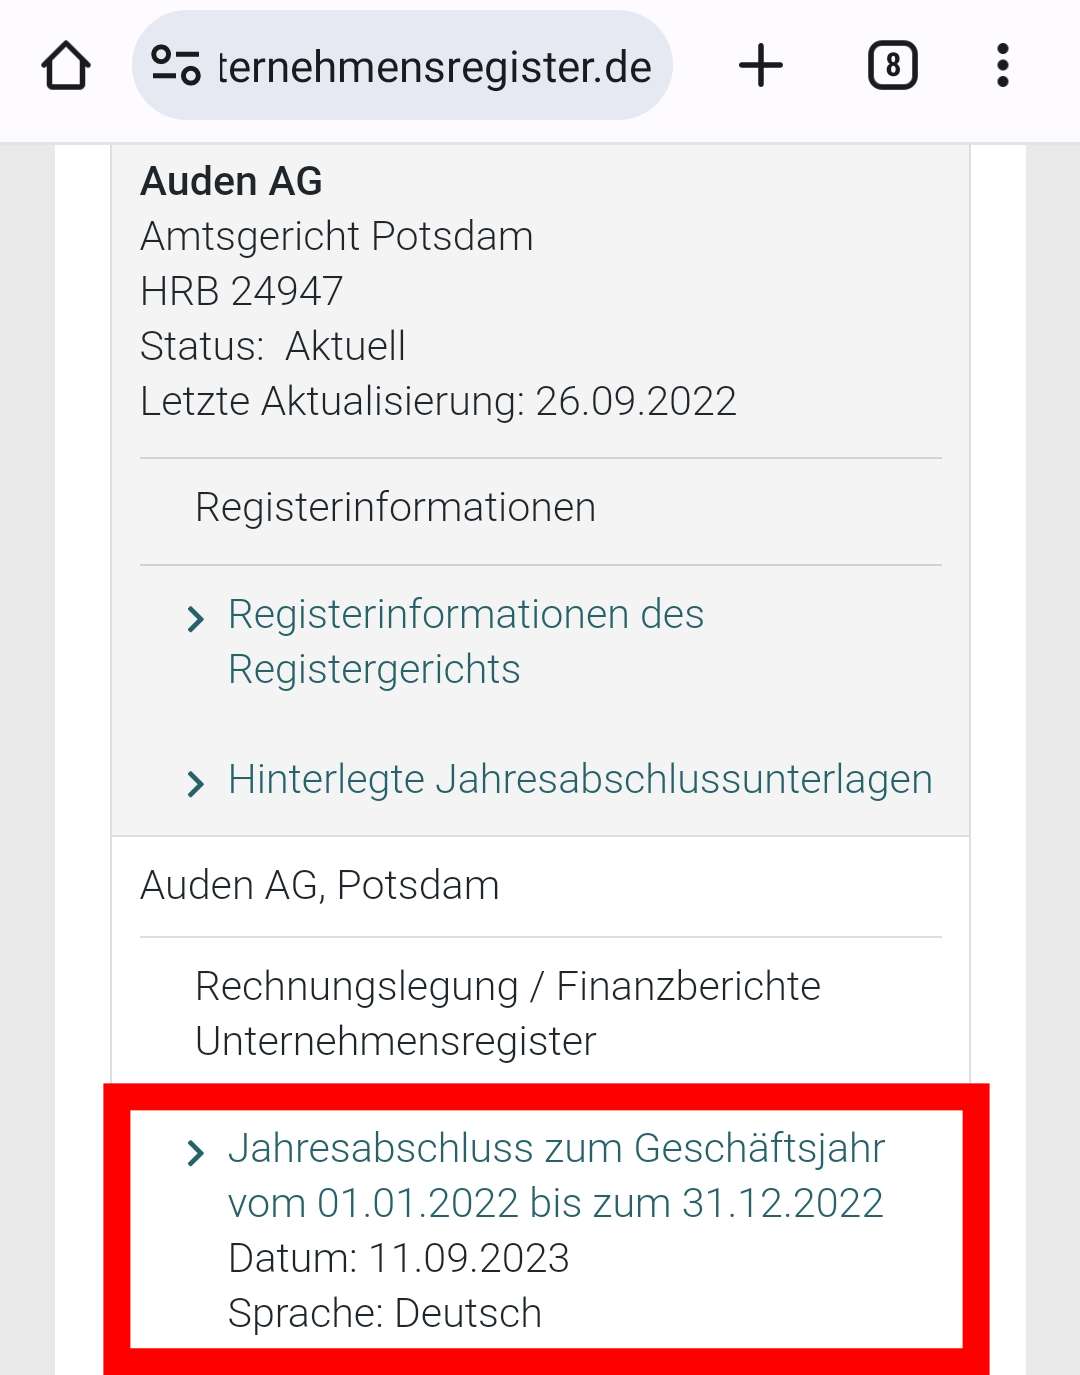 Auden AG - Ein Neustart? 1391121